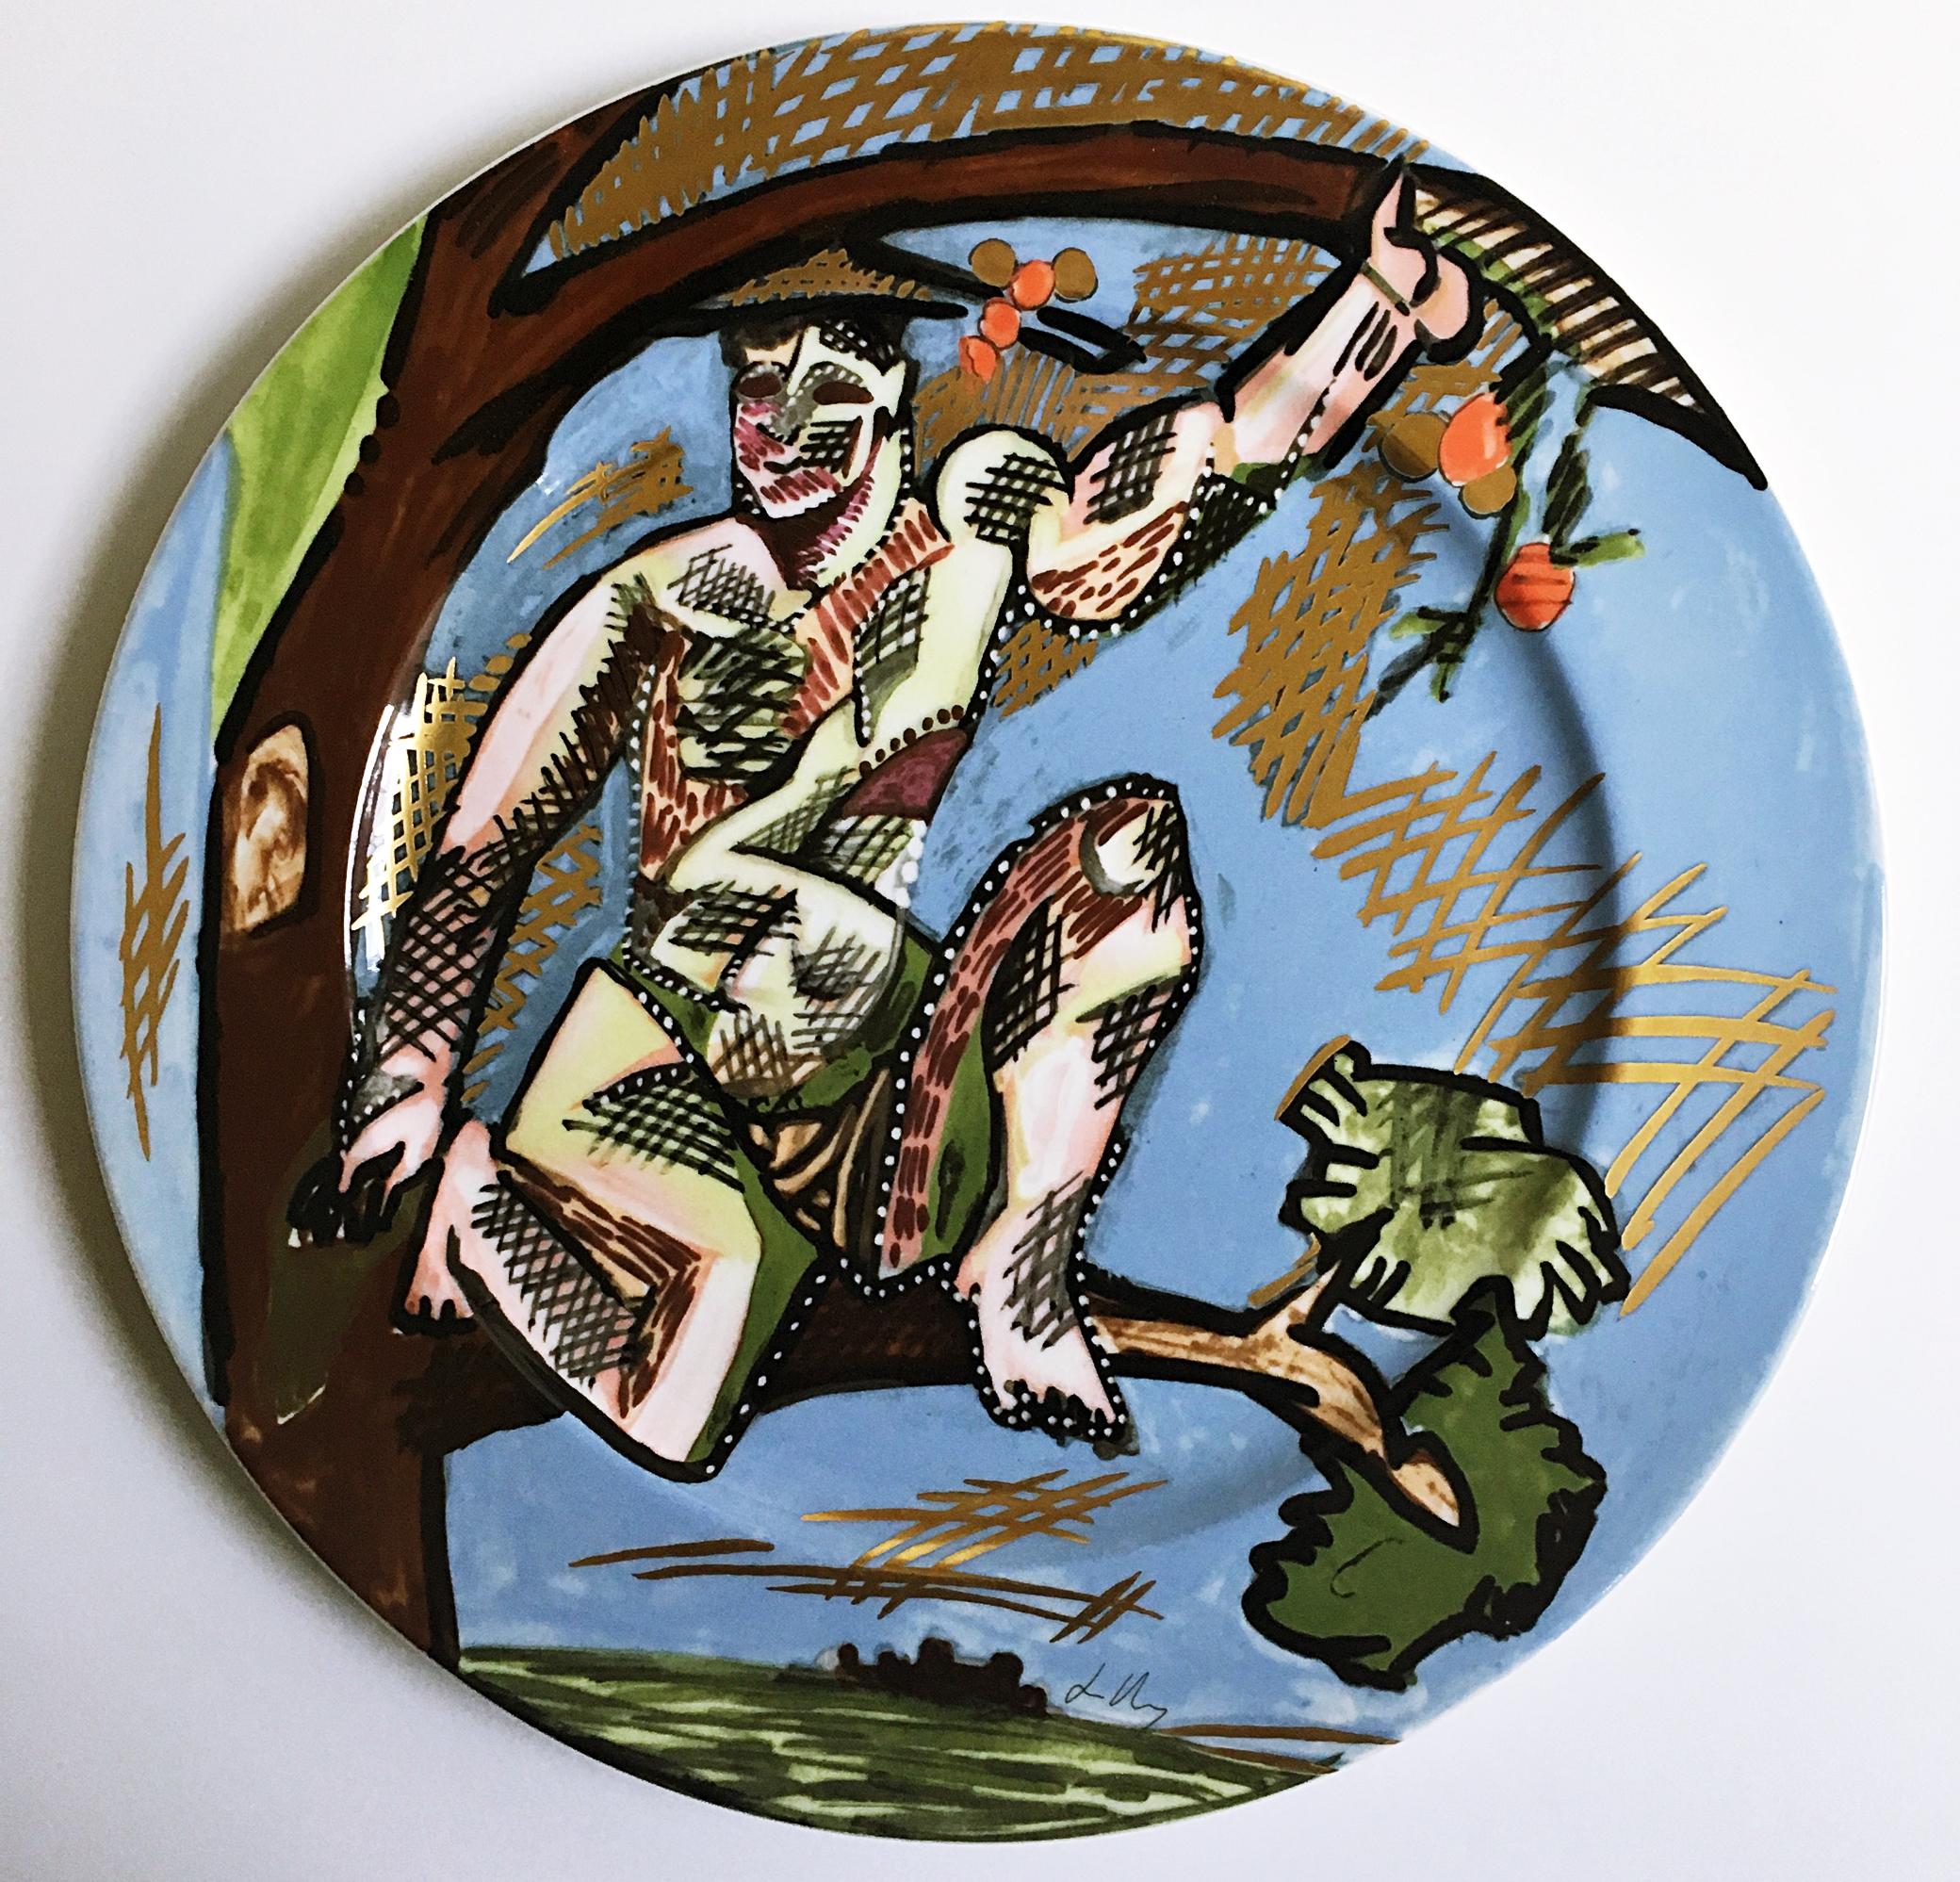 Keramikteller des Kunstlerplatzteller-Künstlers von Rosenthal, Inc – Mixed Media Art von Sandro Chia